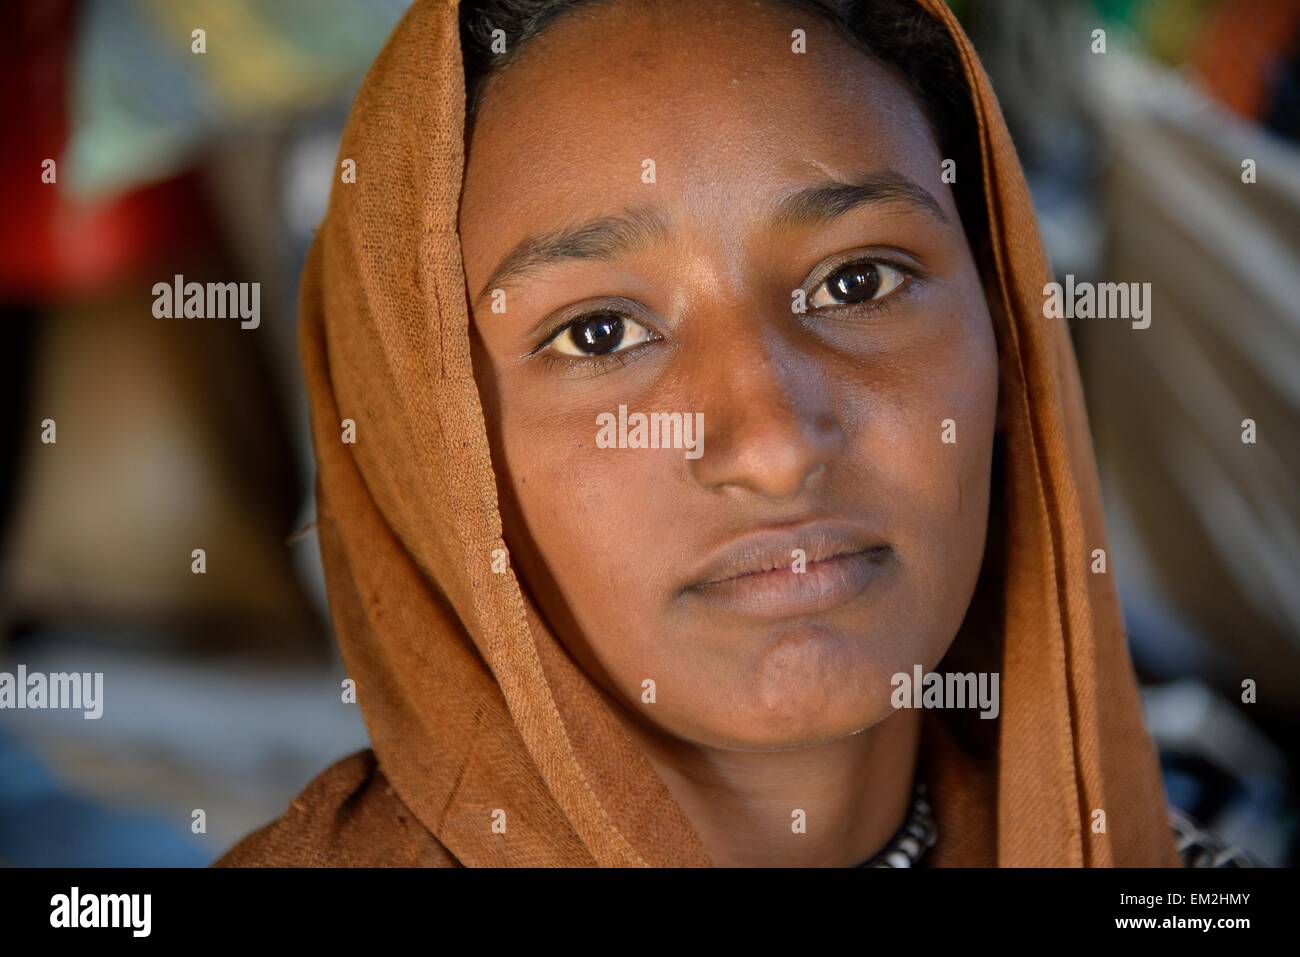 Jeune fille d'une tribu nomade, portant des coiffures, portrait, Désert de Bayouda, Karima, dans le nord du Soudan, Nubie, Soudan Banque D'Images